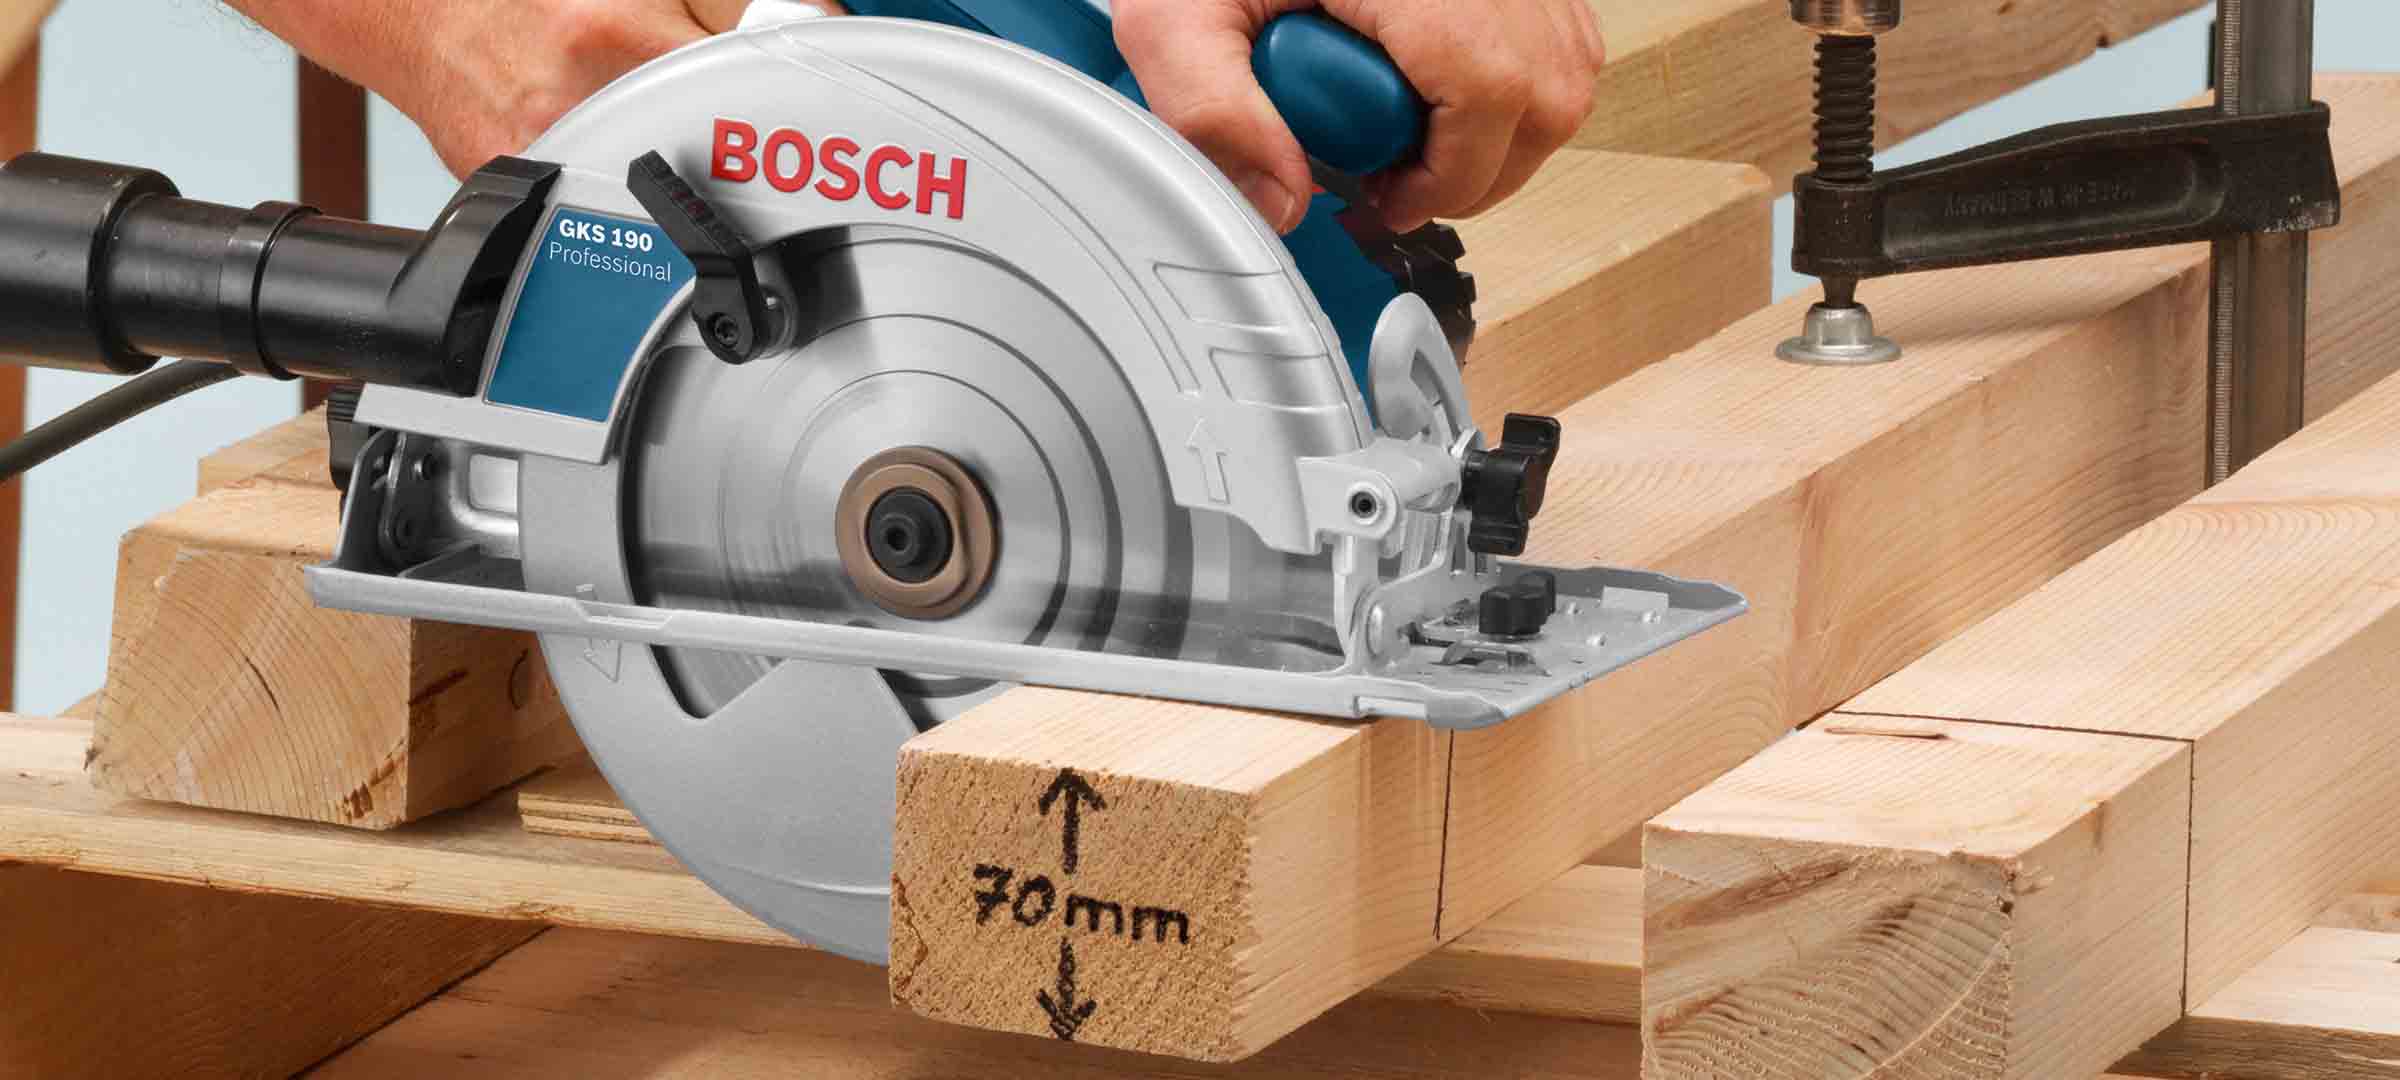 Scie circulaire Bosch GKS 190 : quelles sont ses fonctionnalités ?